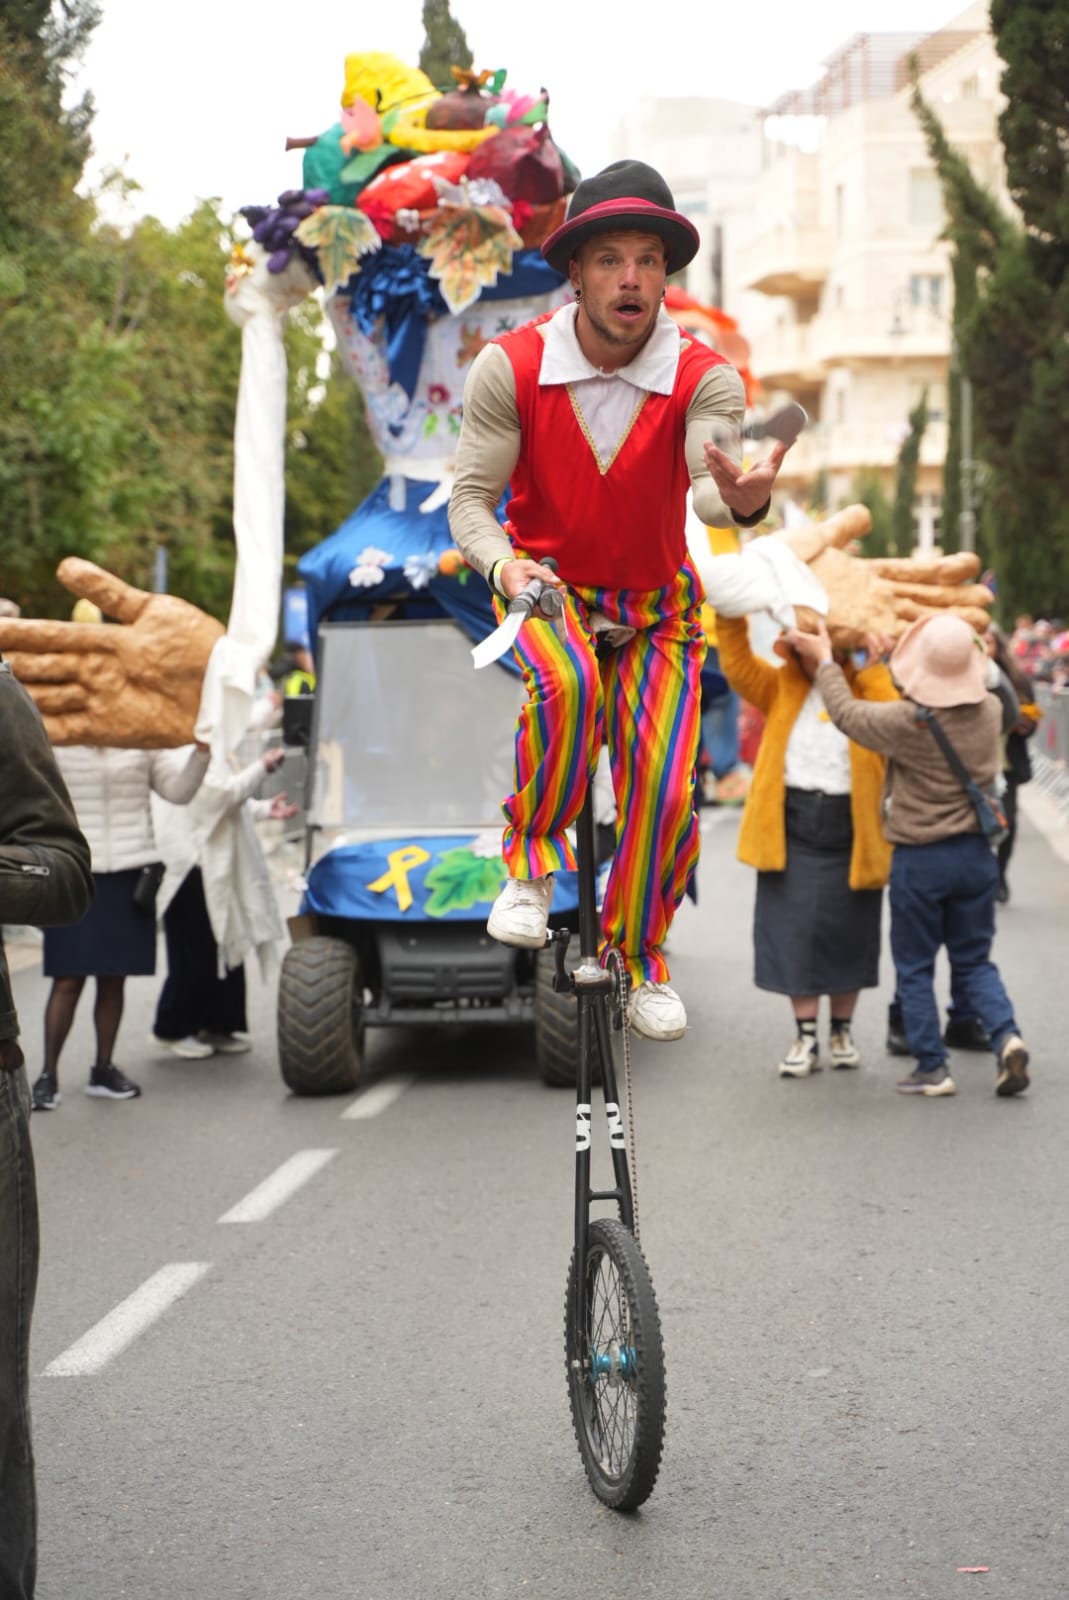 רוכב על חד אופן בתהלוכה, כשסמל מאבק החטופים על הרכב מאחור (צילום: דוברות עיריית ירושלים)